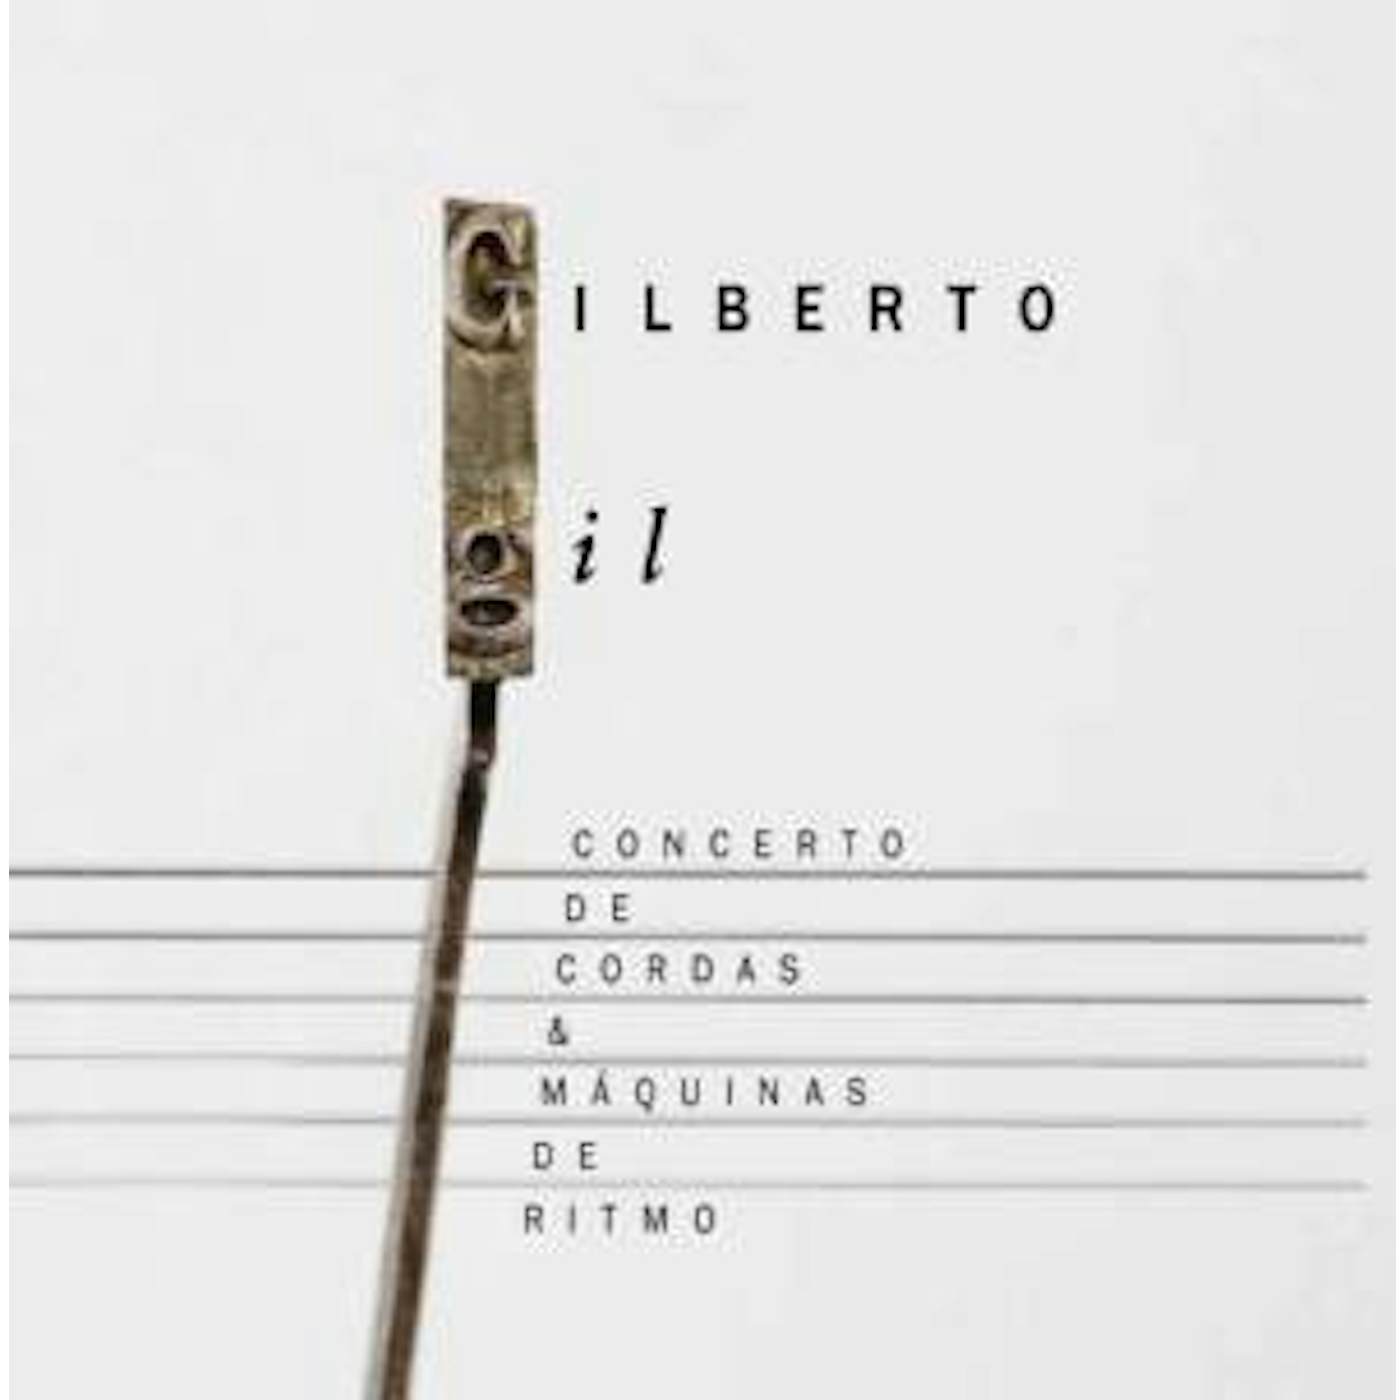 Gilberto Gil CONCERTO DE CORDAS E MAQUINAS DE RITMO CD